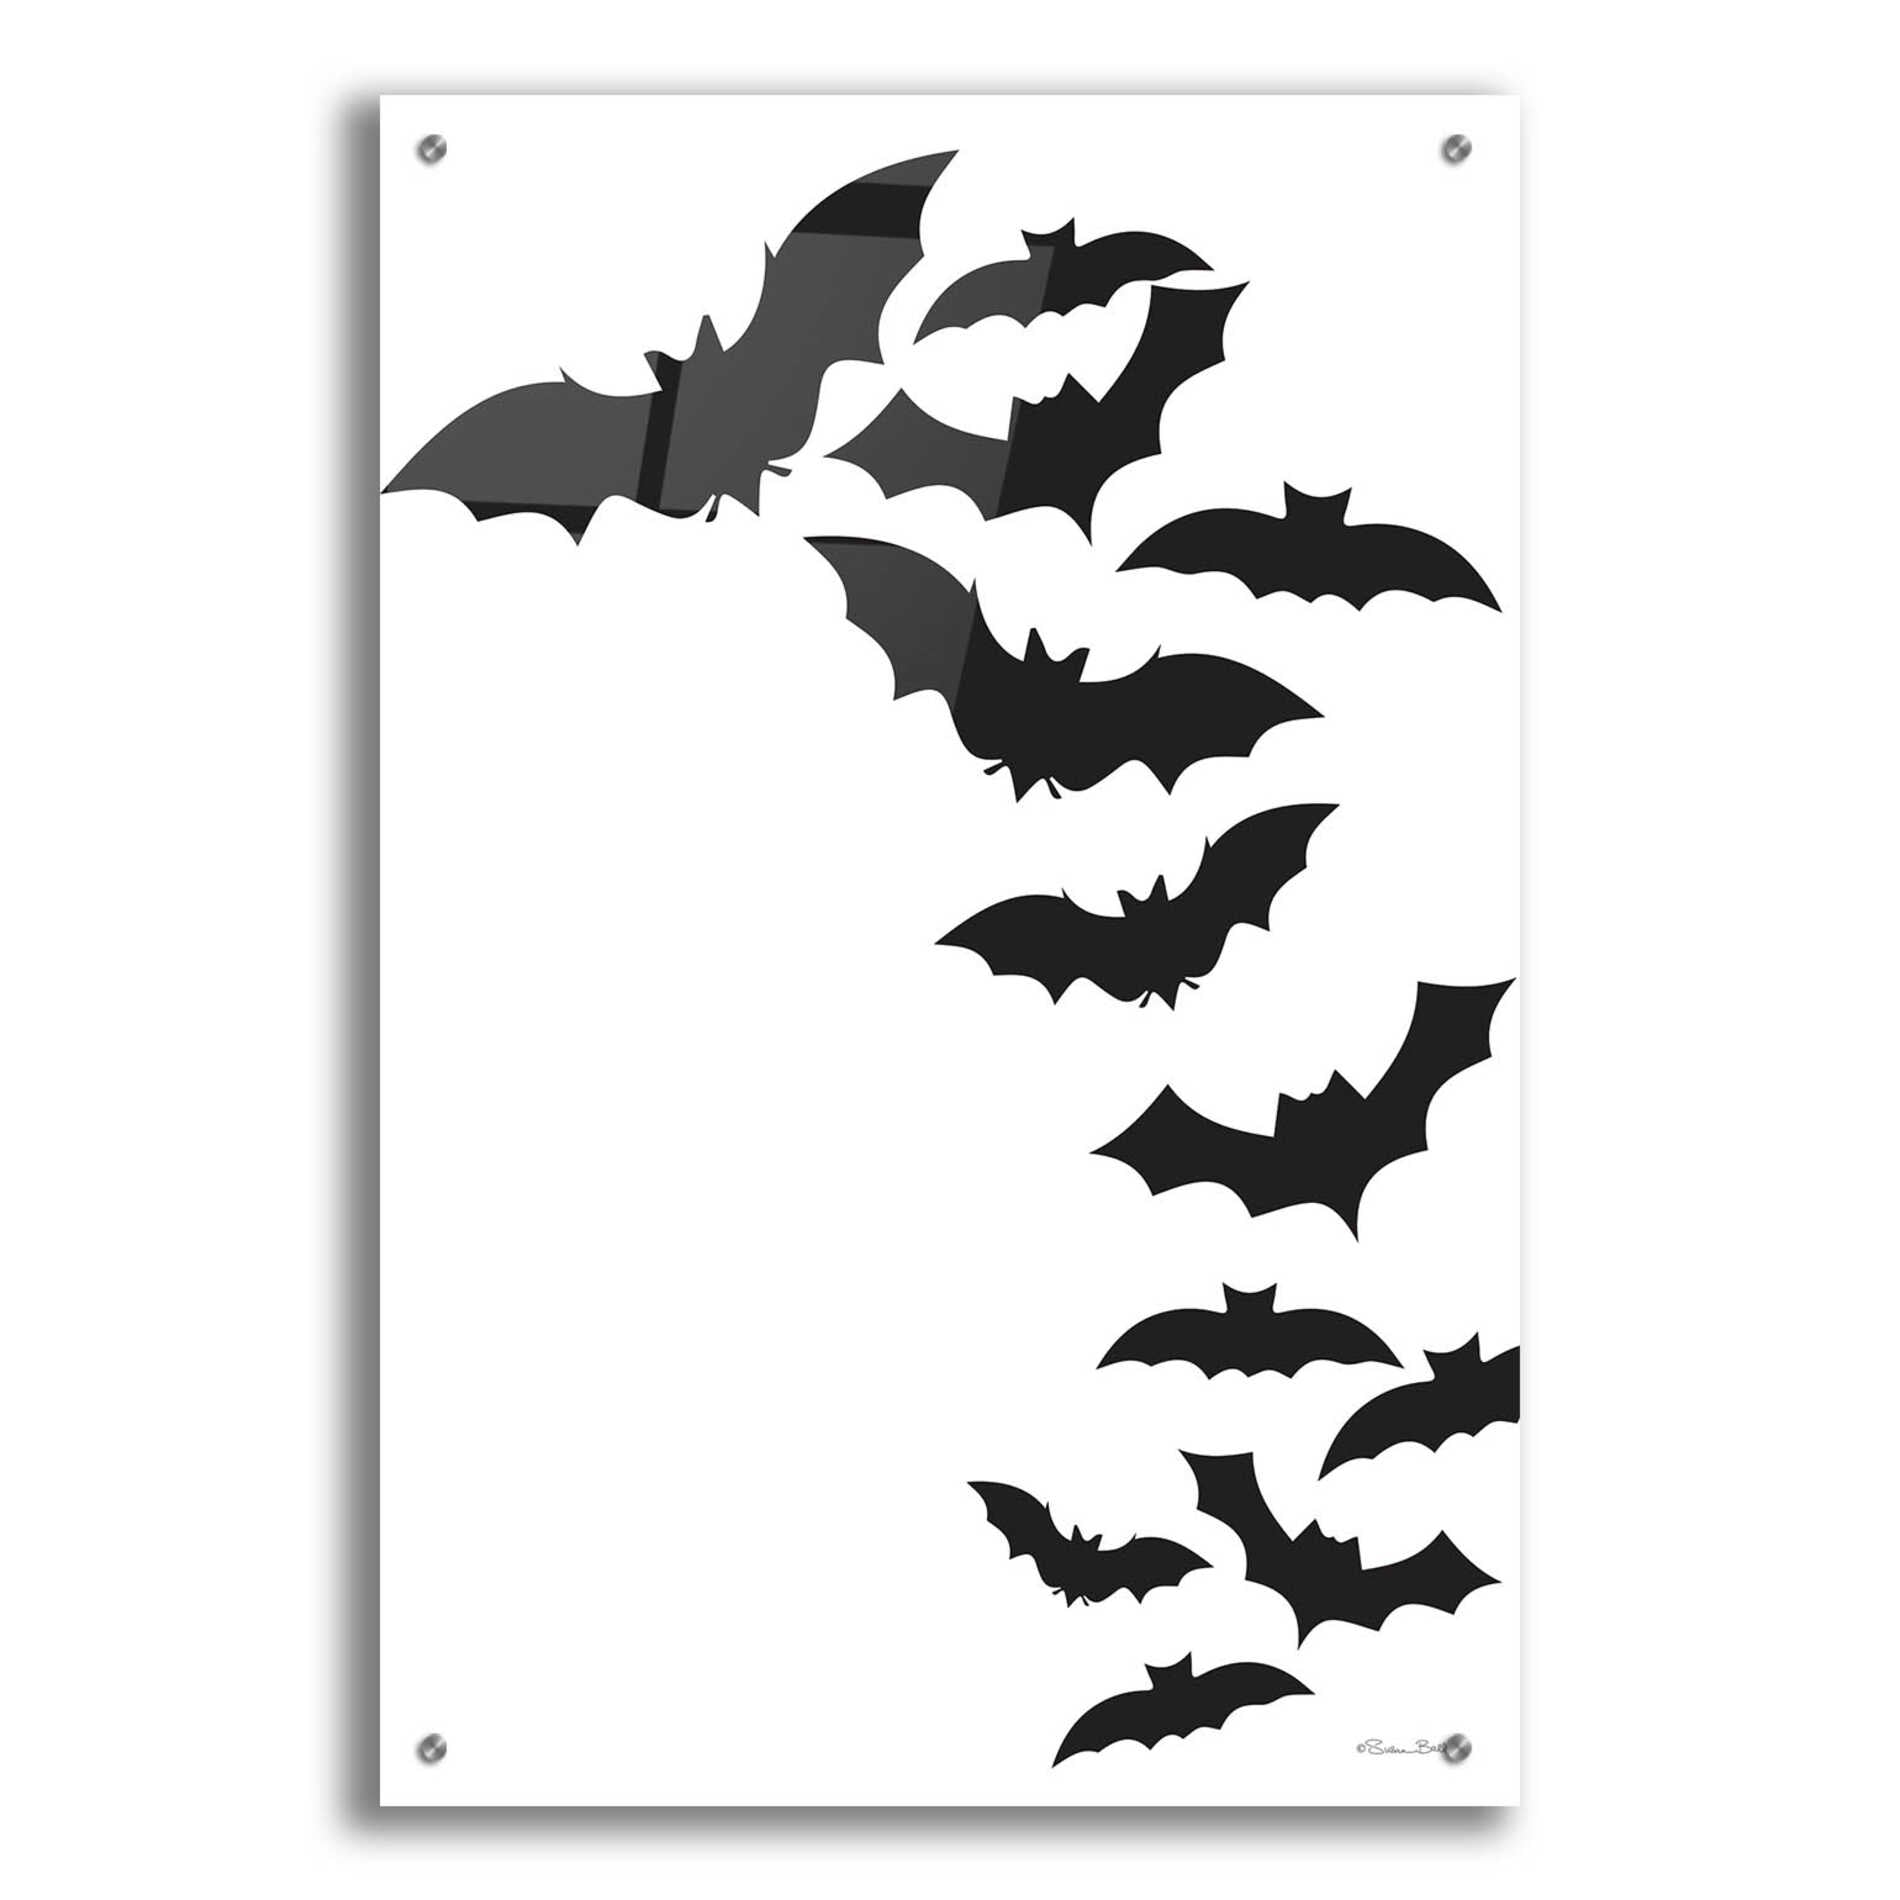 Epic Art 'Flock of Bats' by Susan Ball, Acrylic Glass Wall Art,24x36